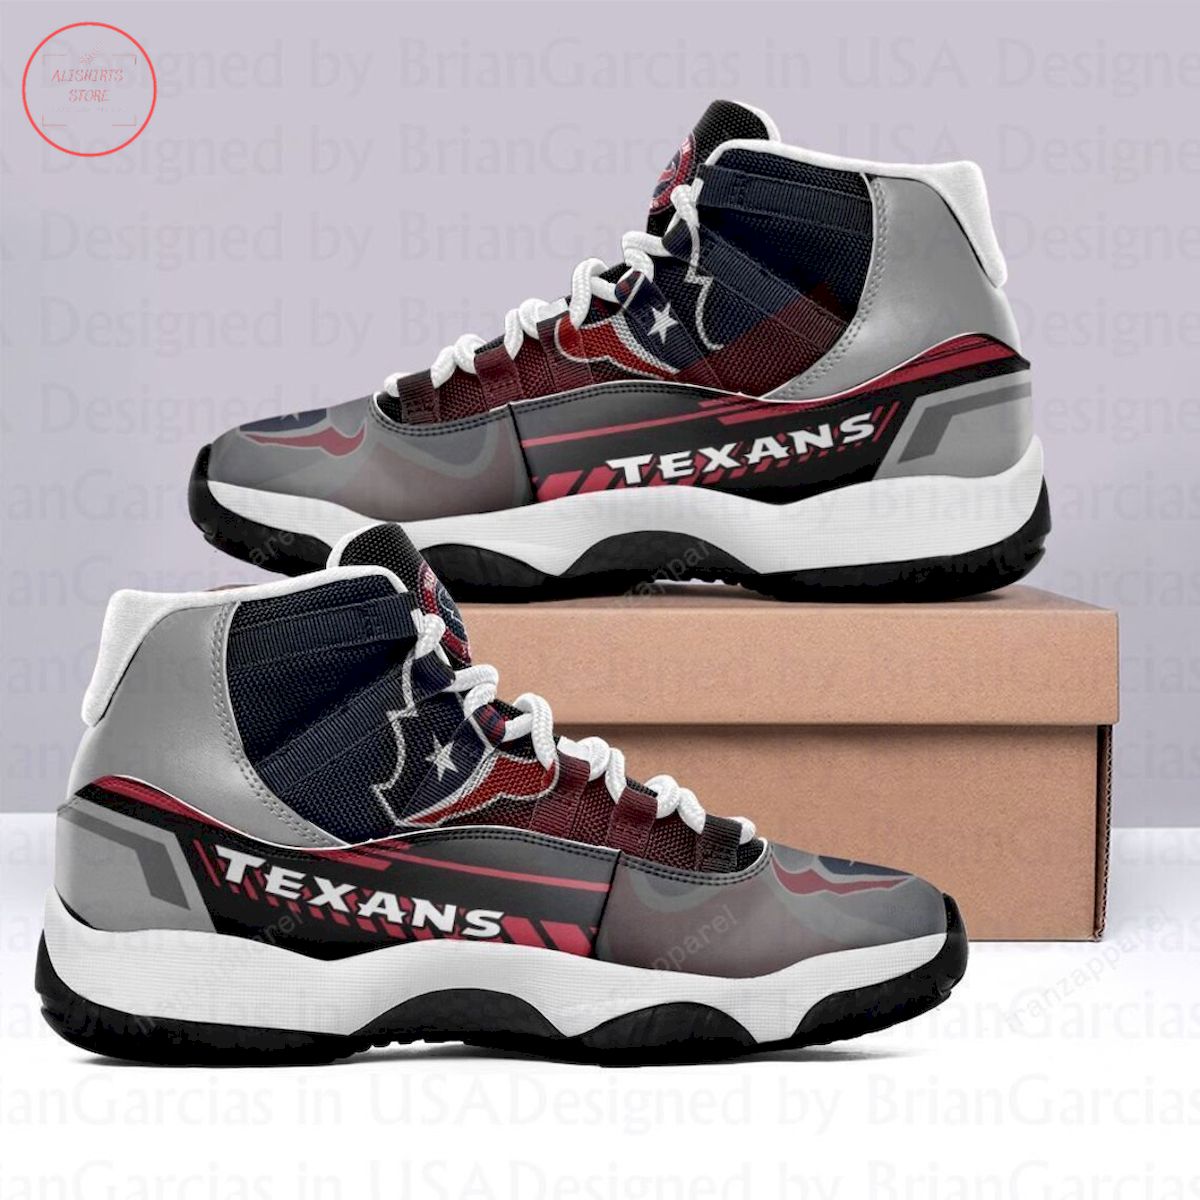 Houston Texans Air Jordan 11 Sneakers